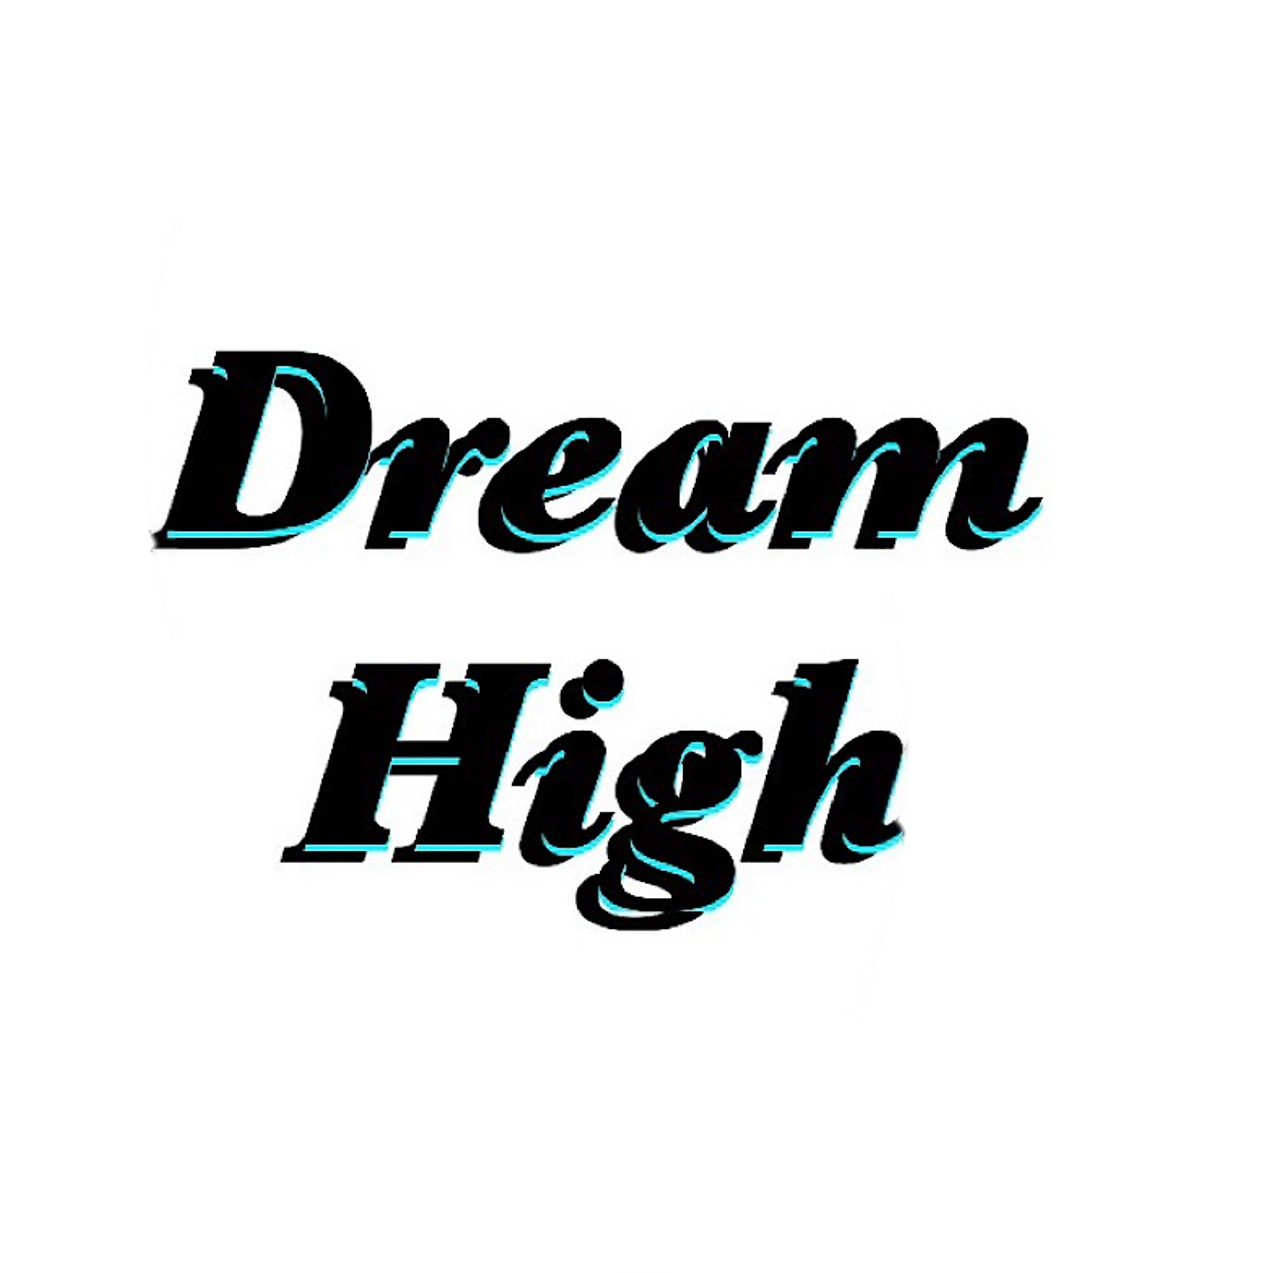 Dream High